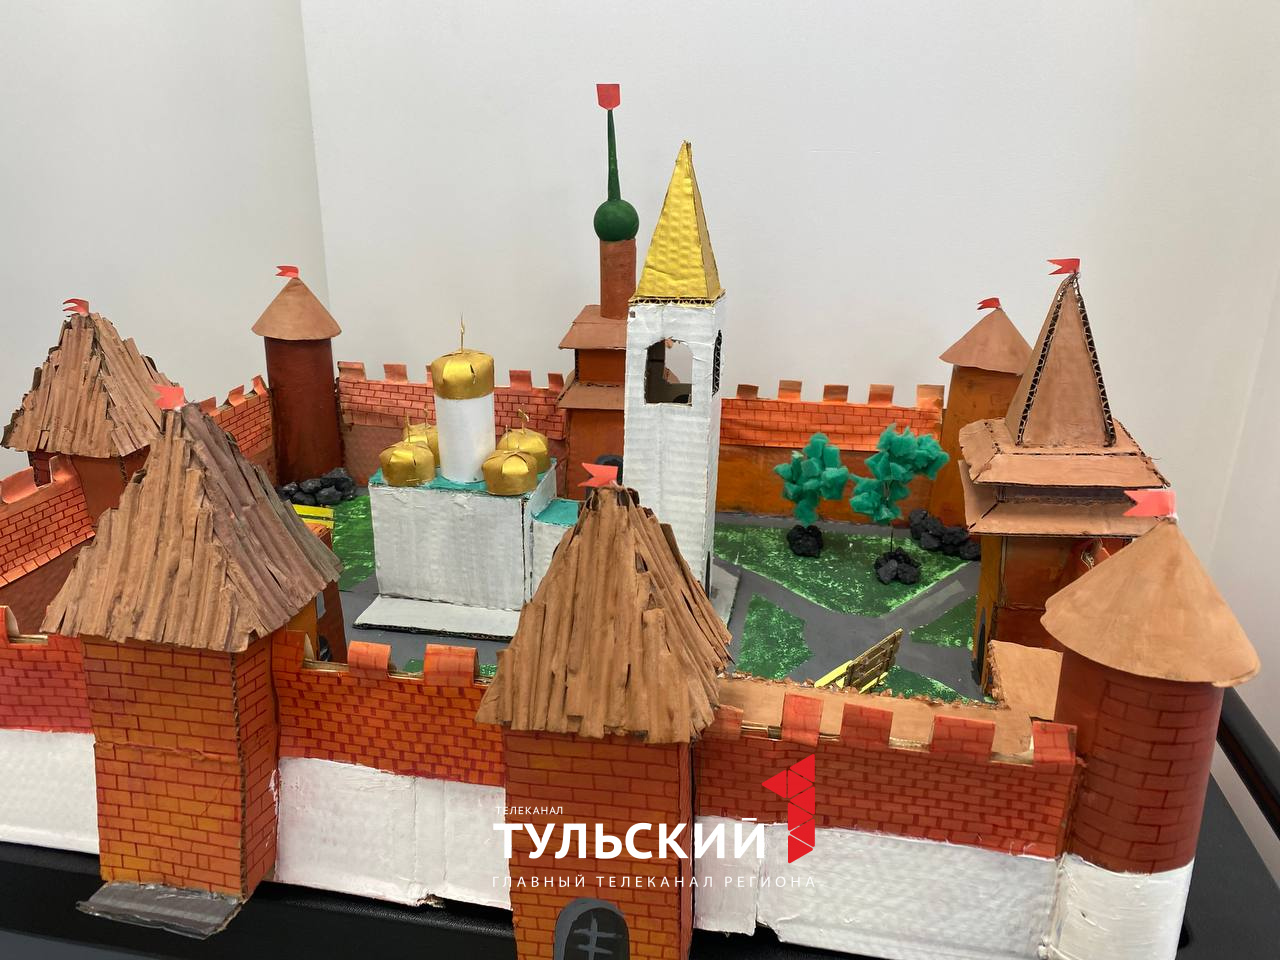 Тульские школьники создали новый голосовой помощник и макет Кремля из фтор-сырья